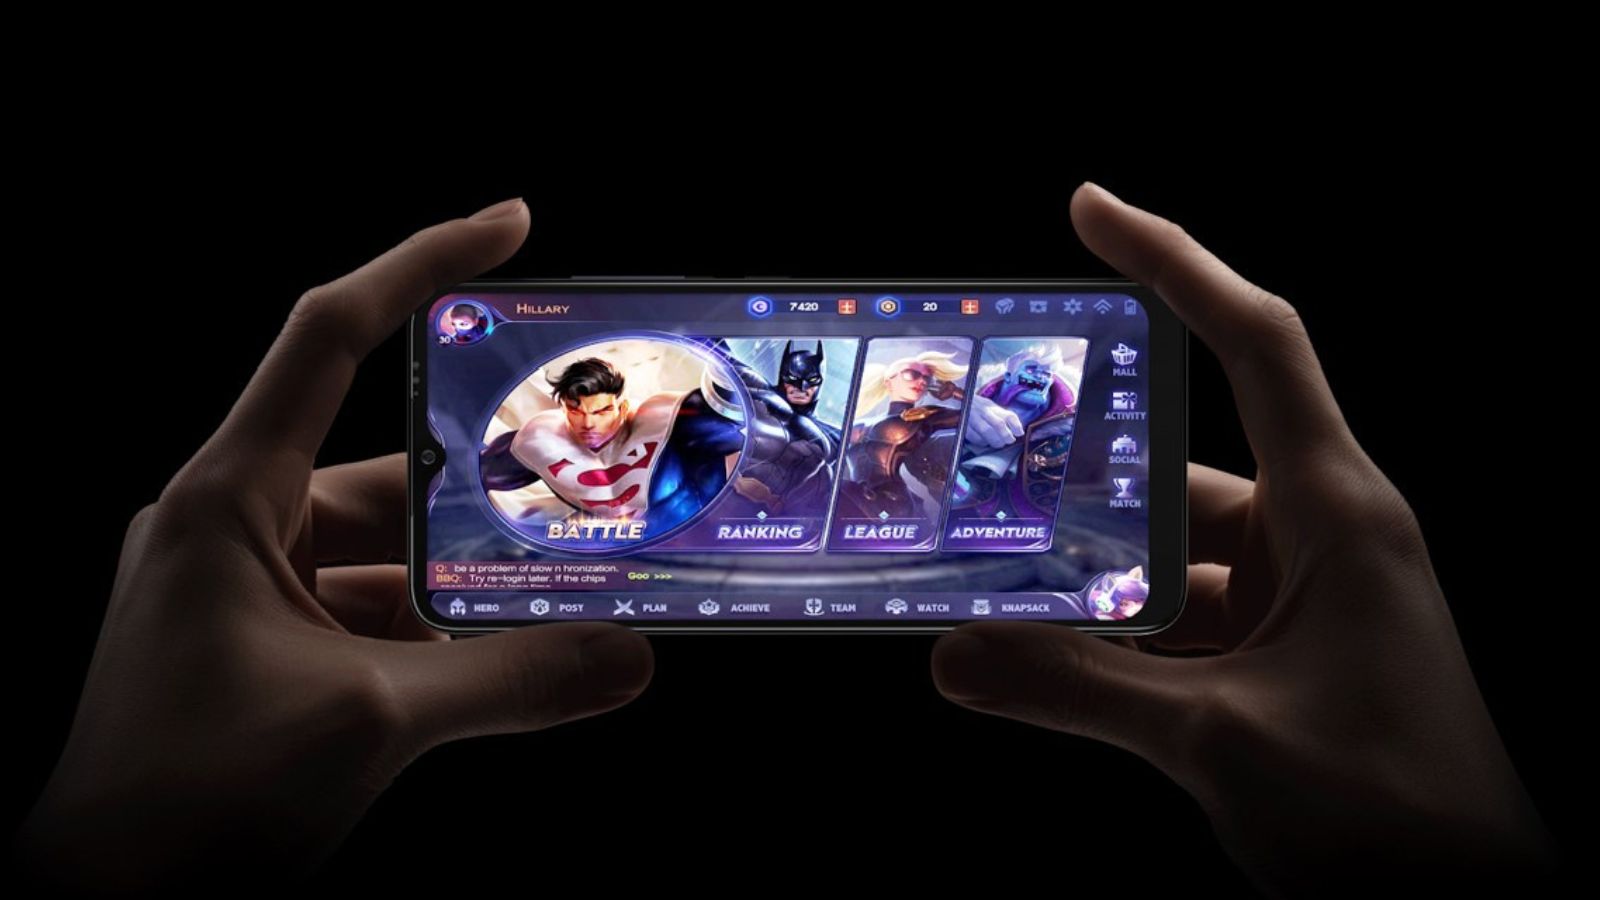 DOOGEE lancia due nuovi smartphone: Smini e N50 Pro